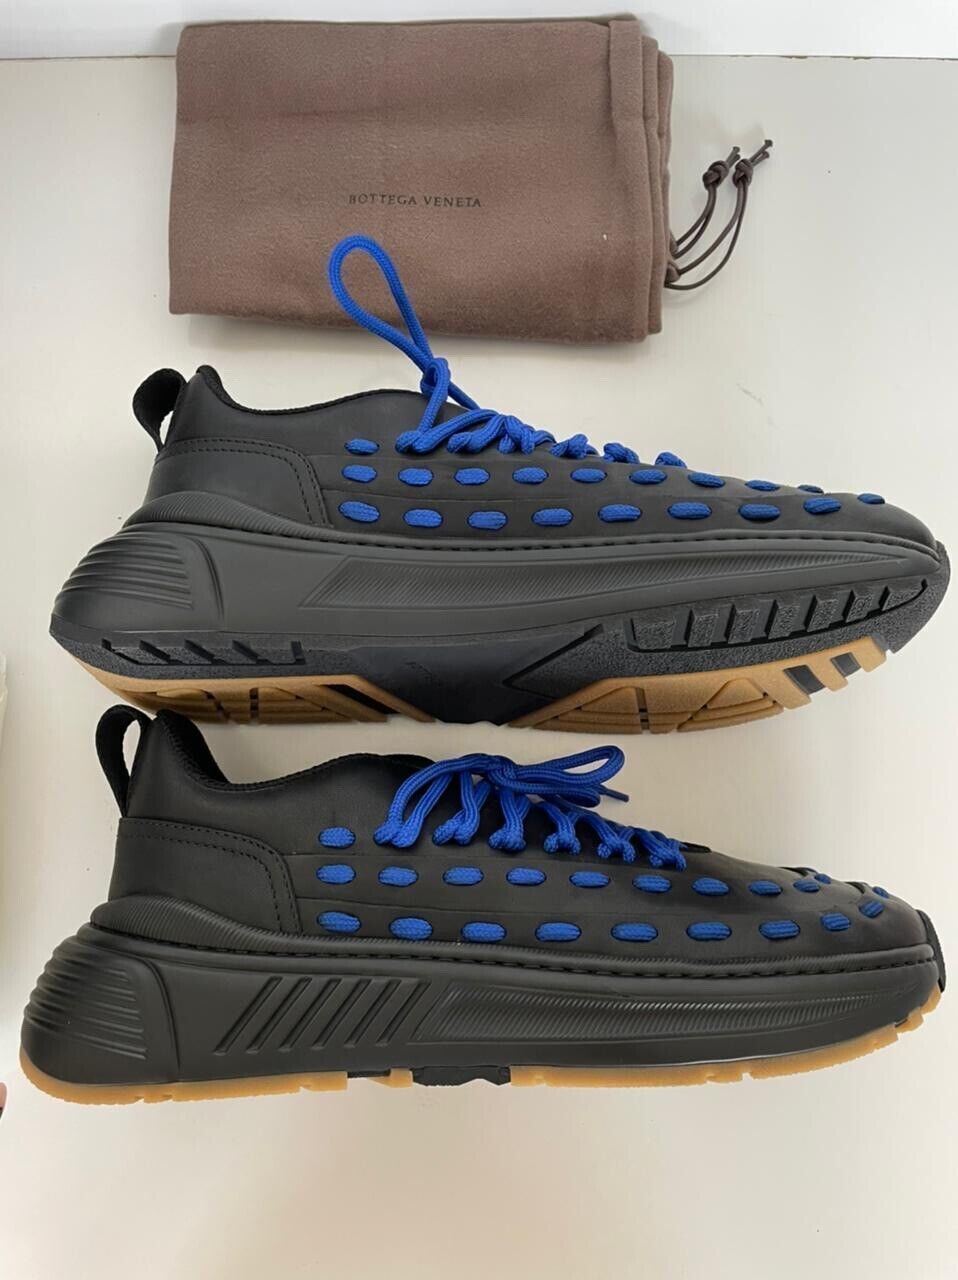 Мужские кожаные черные/синие кроссовки Bottega Veneta 950 долларов США 9,5 США 578305 1014 